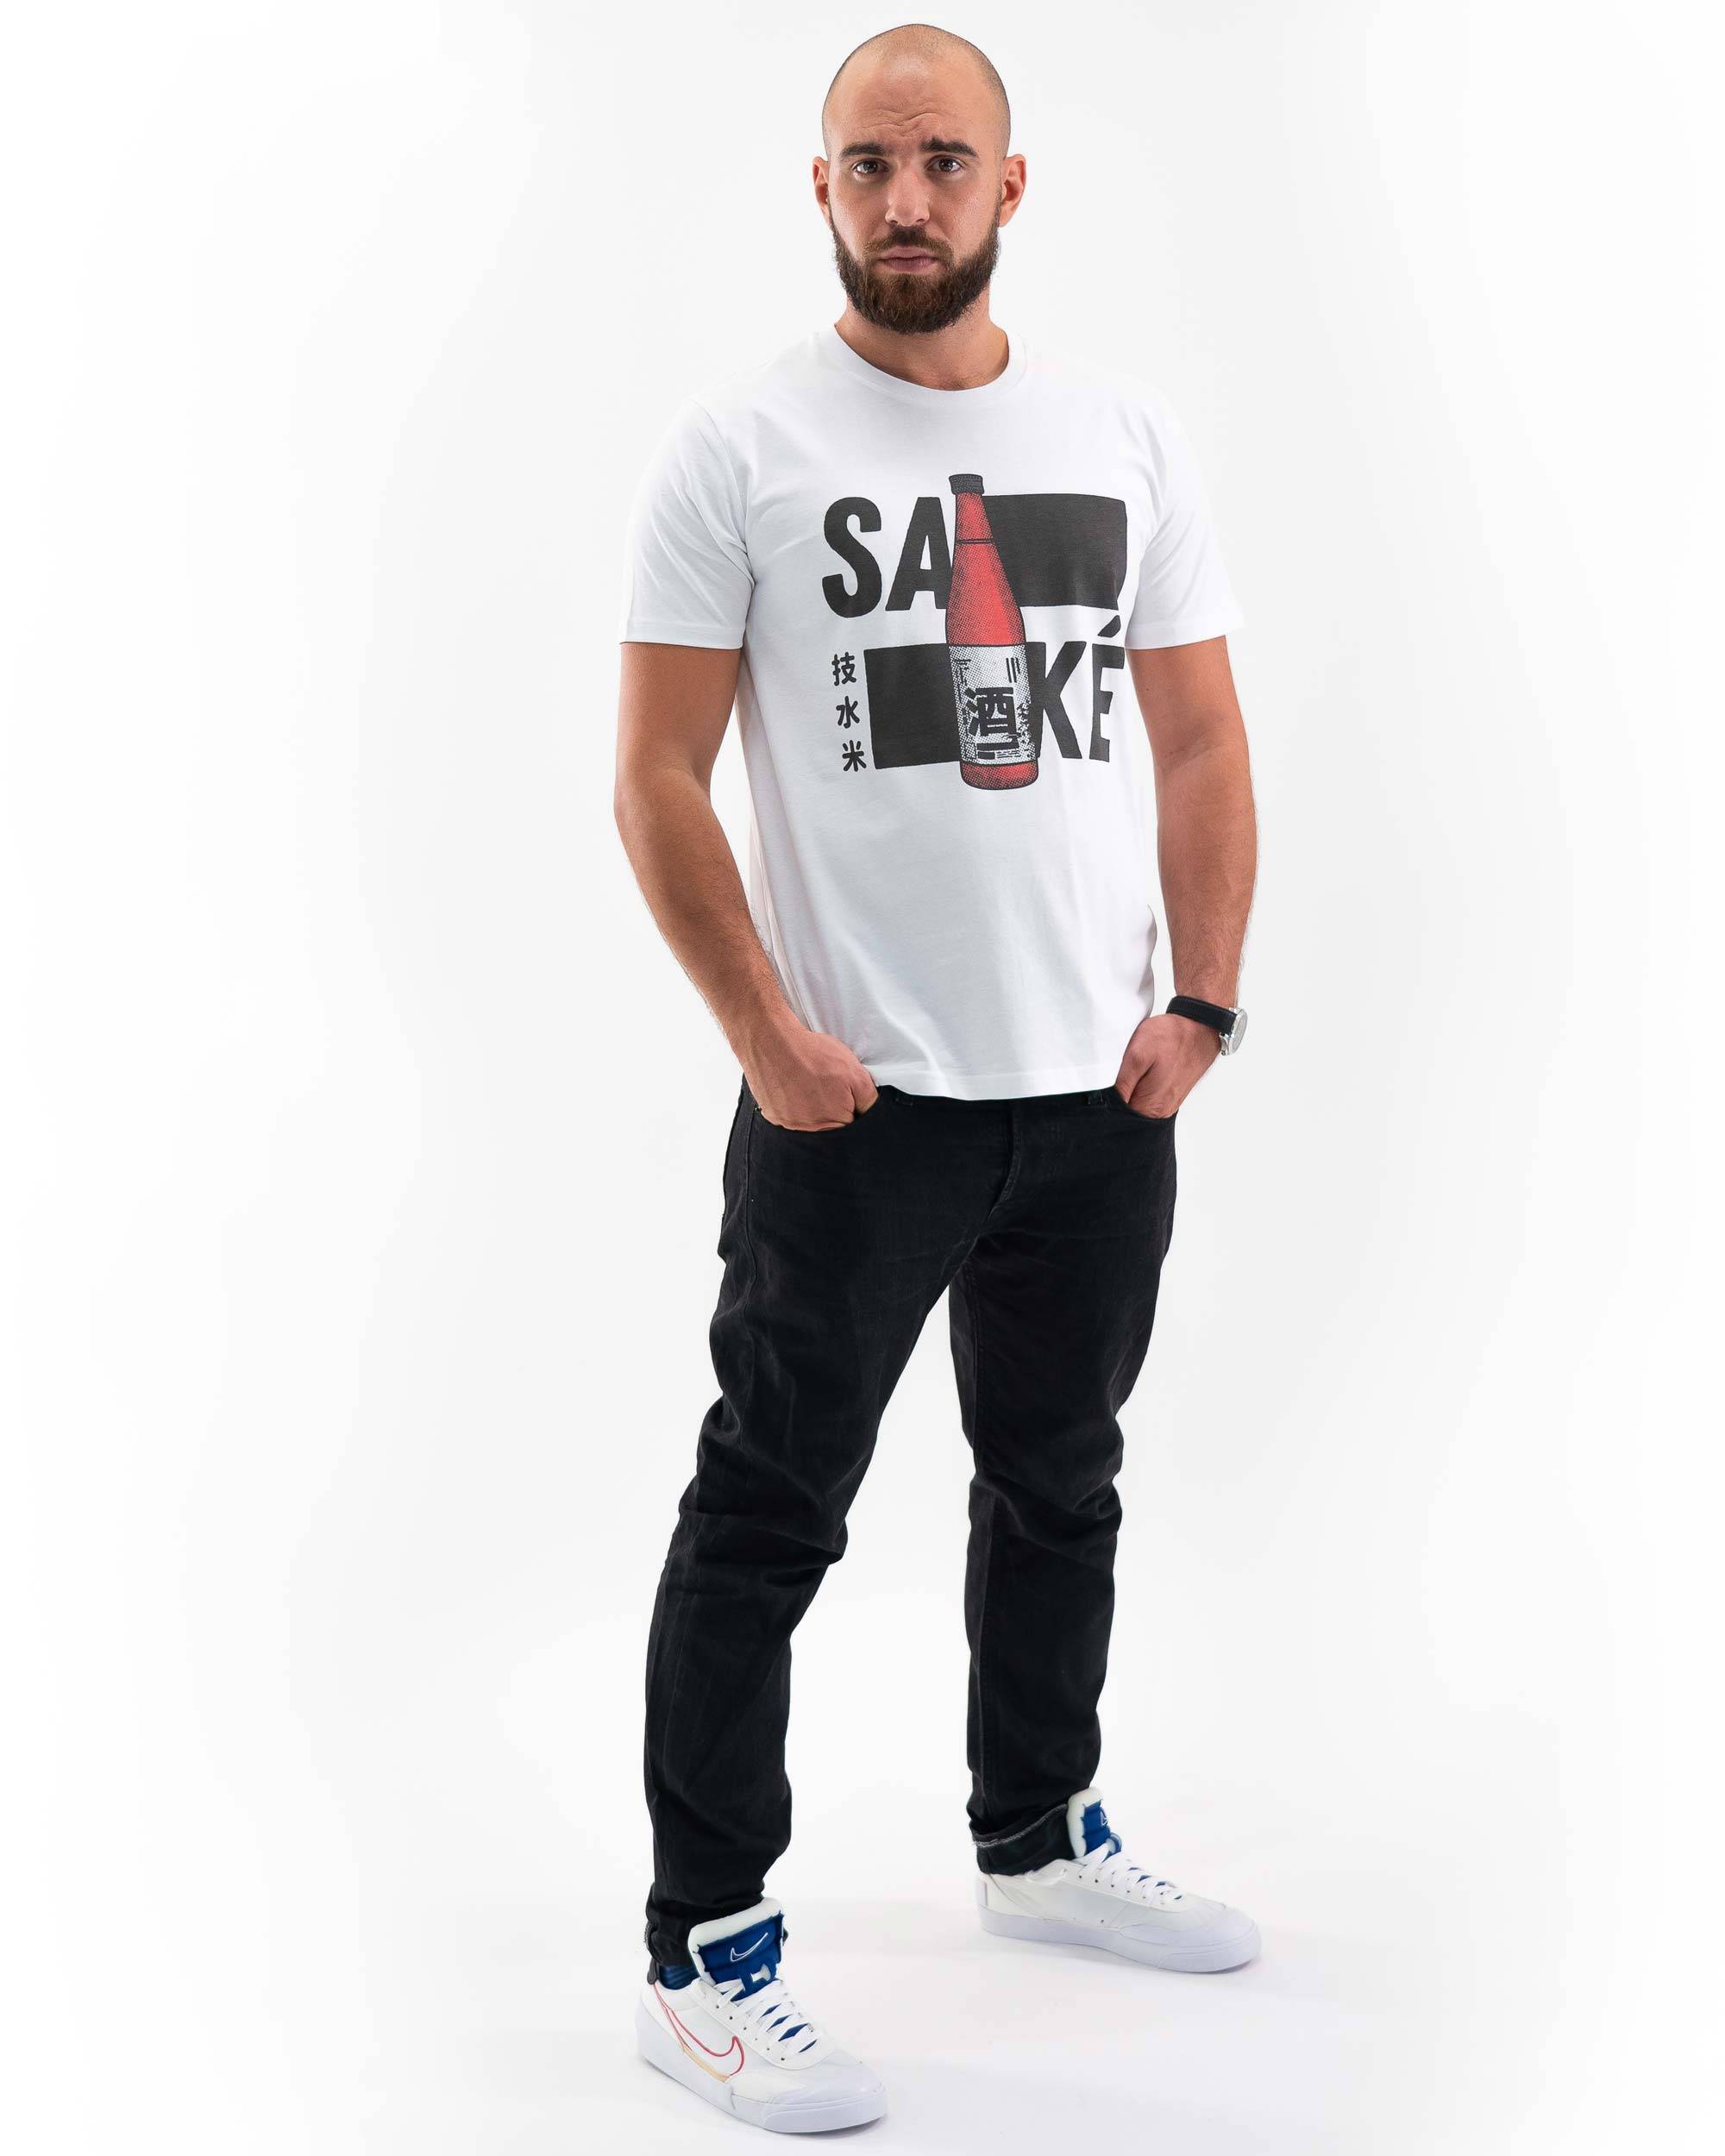 T-shirt Saké de couleur Blanc par The Beart Studio